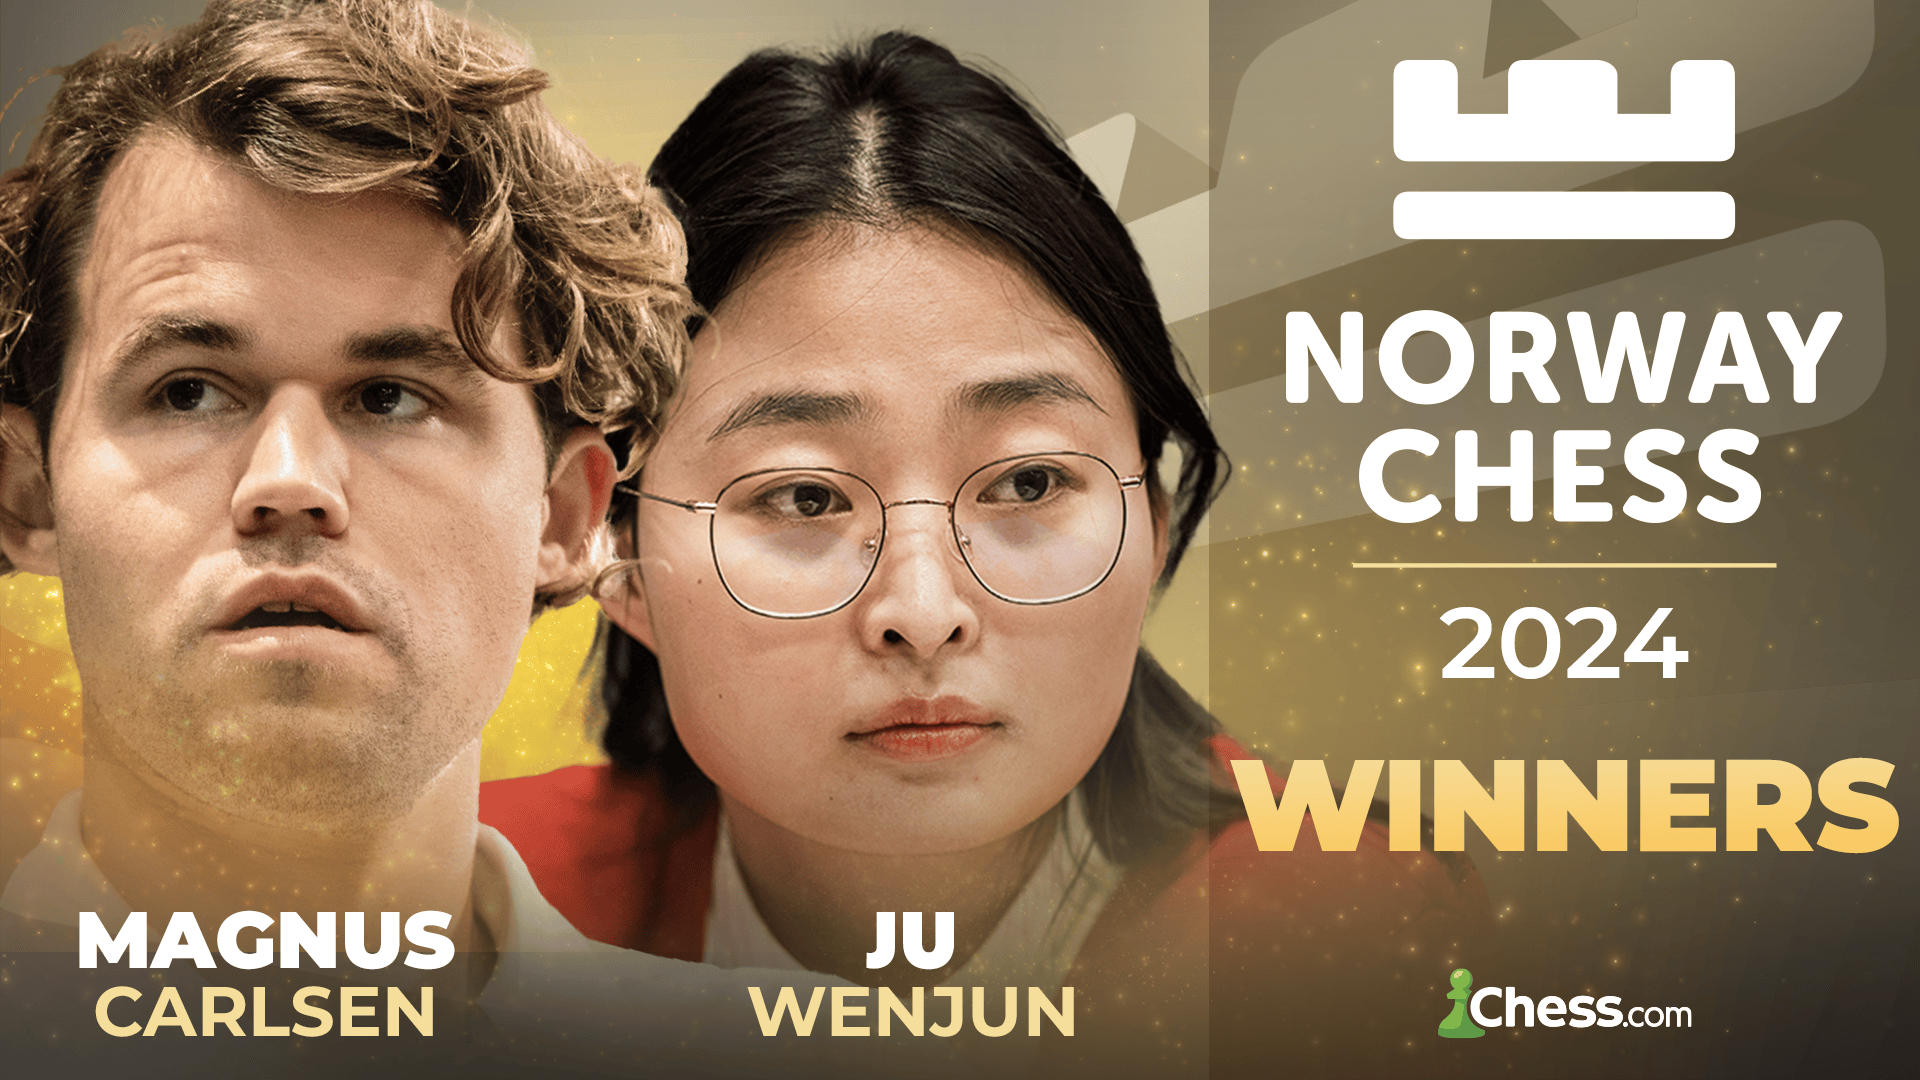 Carlsen, Ju Wenjun Win Norway Chess Titles